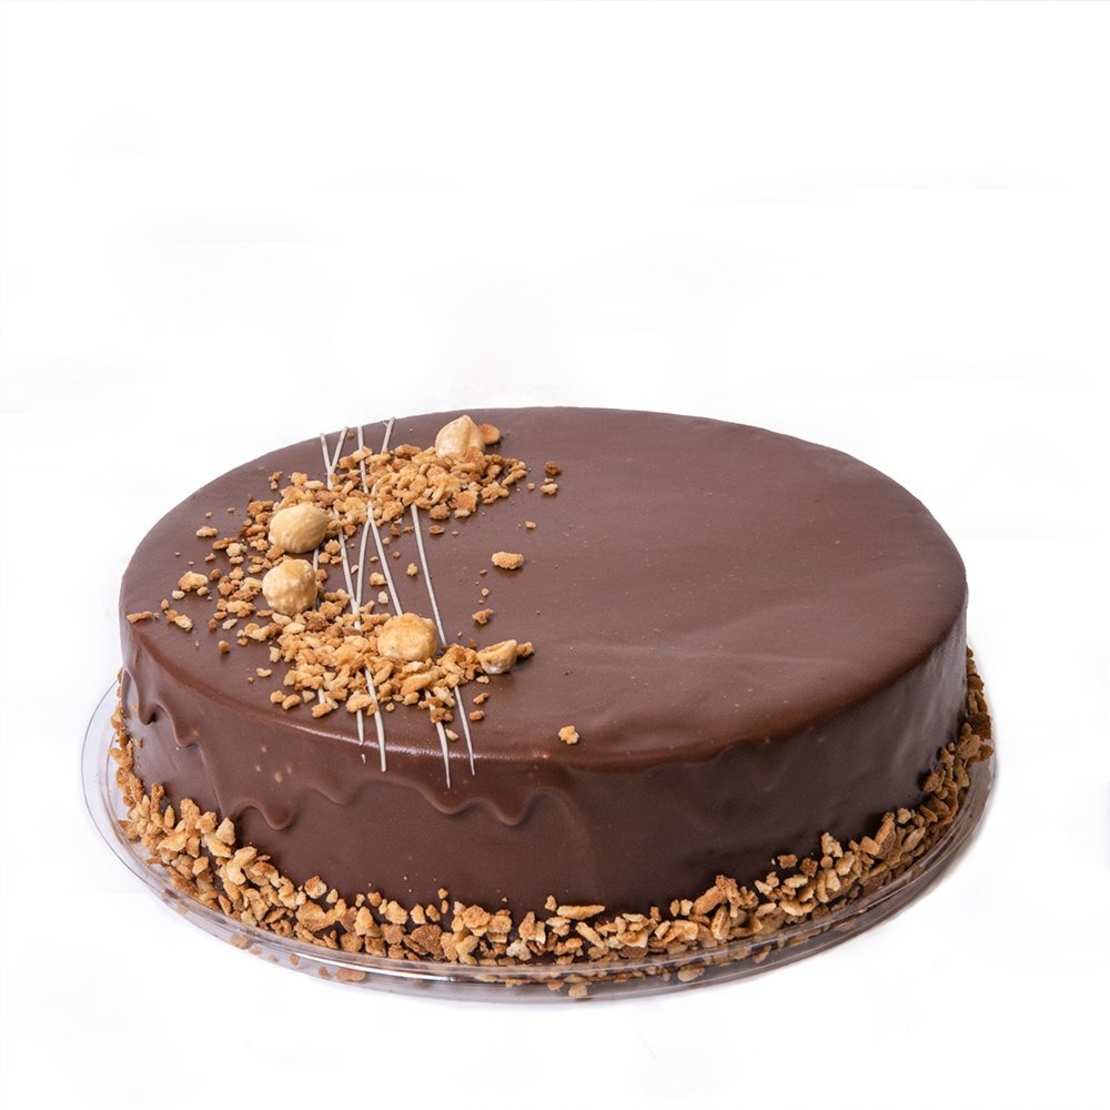 Nutella cream cake | Halavi - Badatz